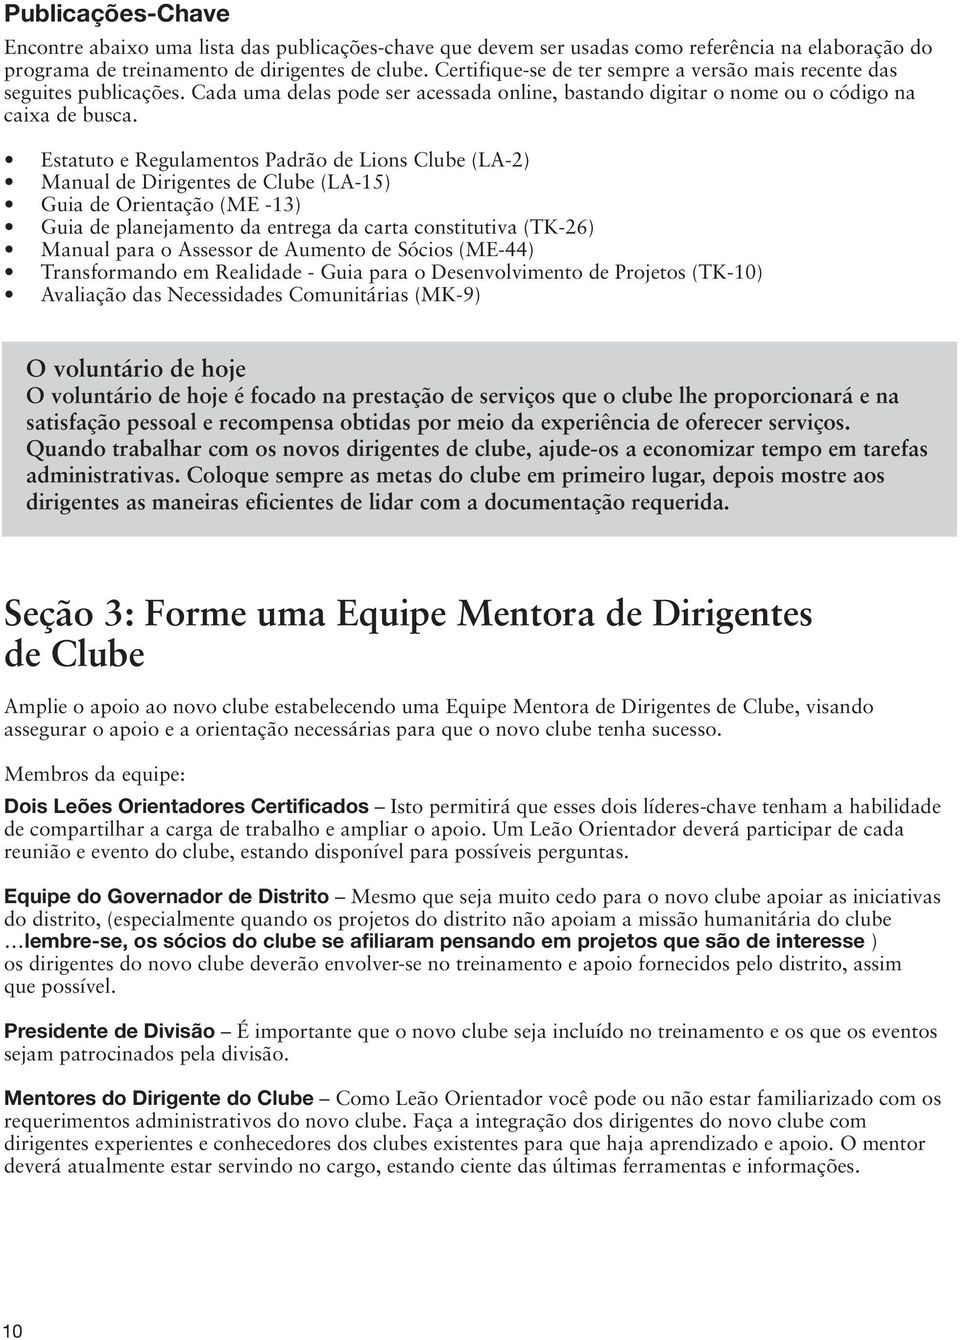 Estatuto e Regulamentos Padrão de Lions Clube (LA-2) Manual de Dirigentes de Clube (LA-15) Guia de Orientação (ME -13) Guia de planejamento da entrega da carta constitutiva (TK-26) Manual para o